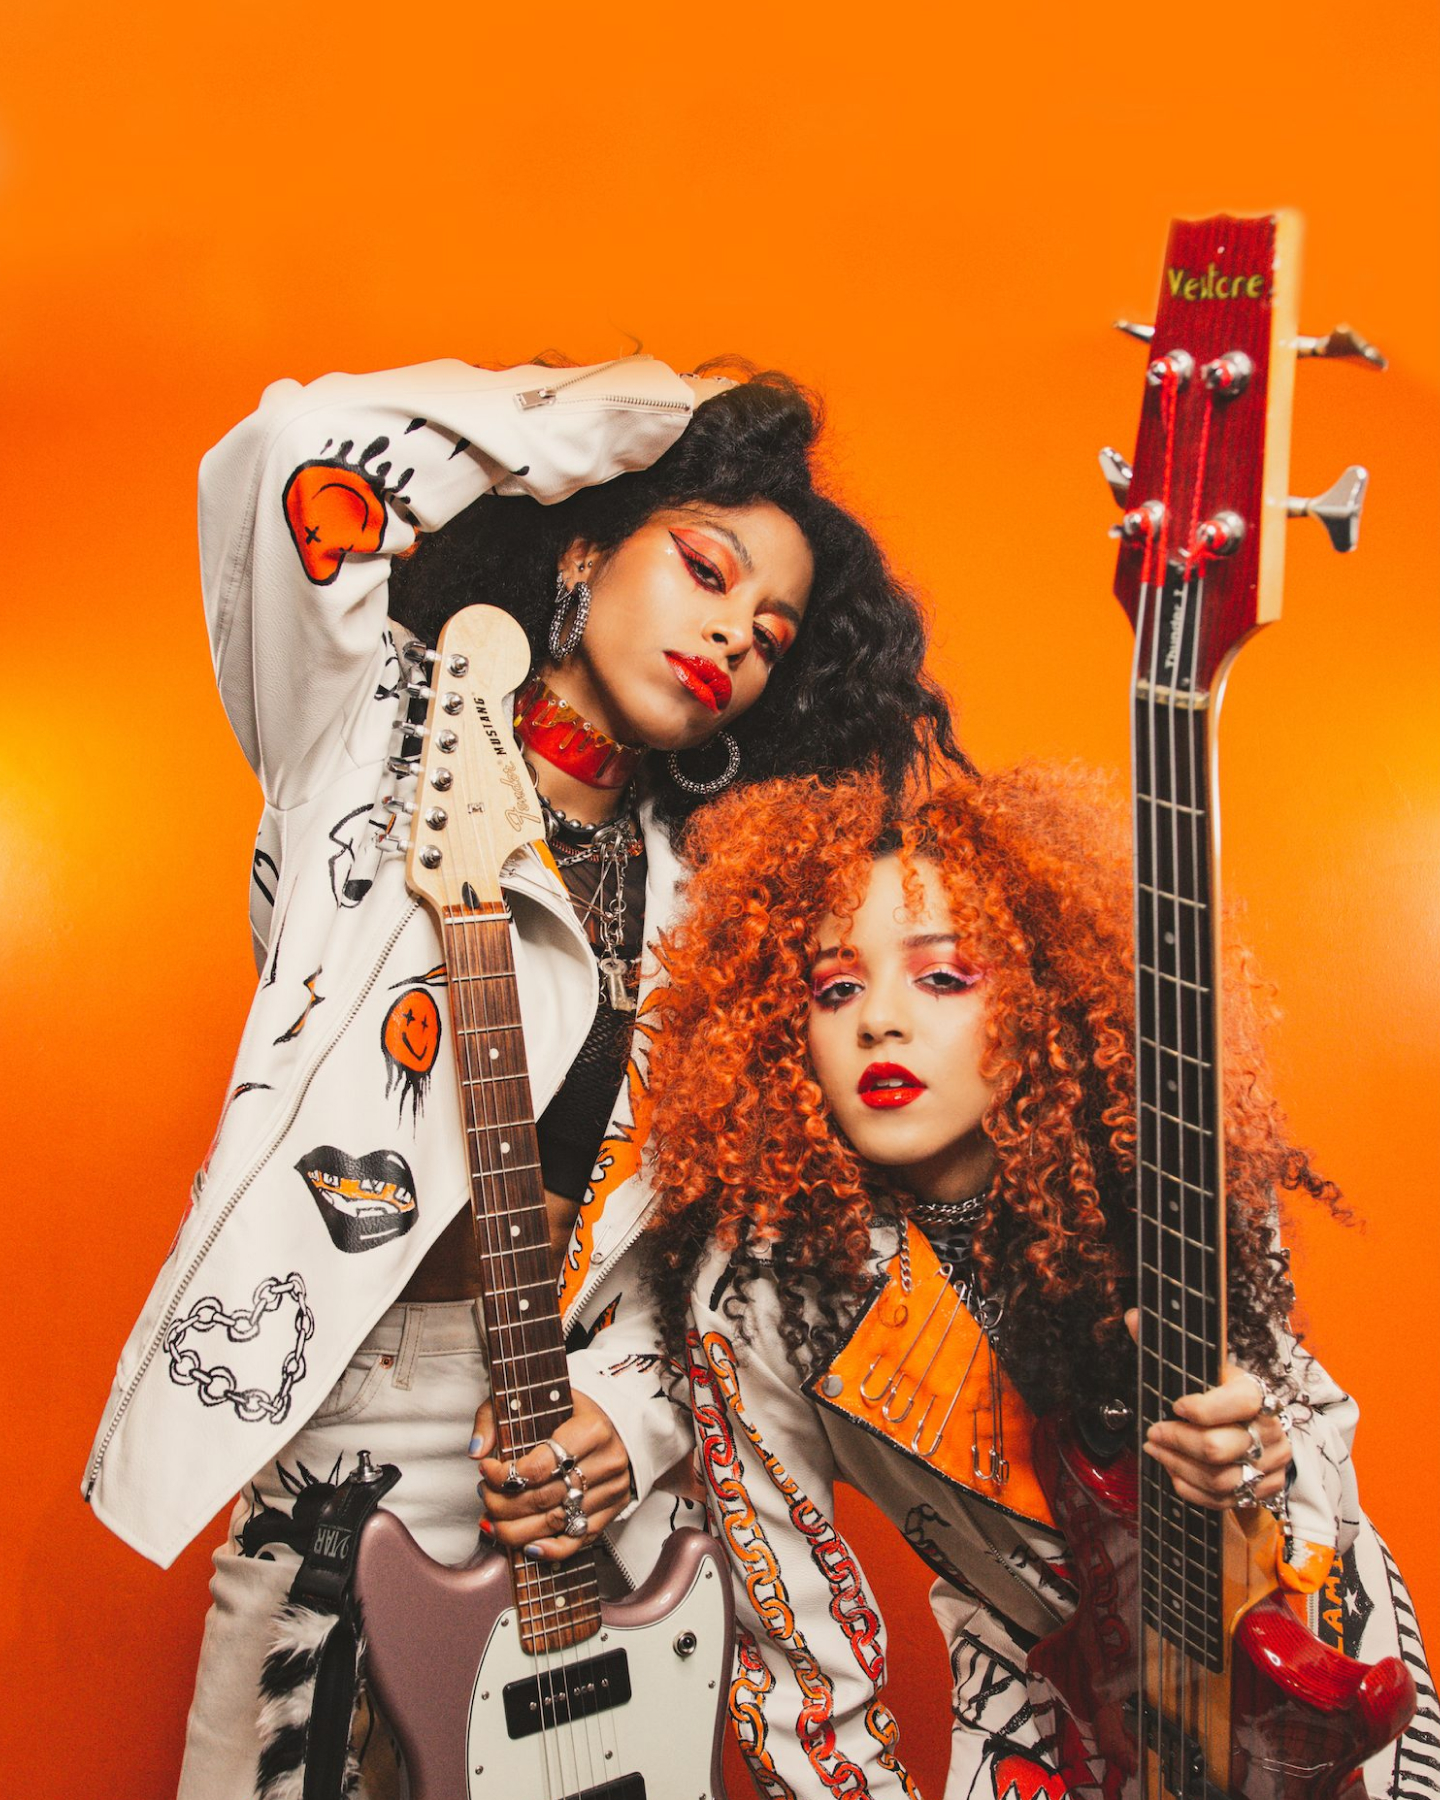 Zwei stilvolle Musiker, einer in einer weißen Jacke und der andere in einer orangefarbenen Bluse, posieren mit E-Gitarren vor einem orangefarbenen Hintergrund.